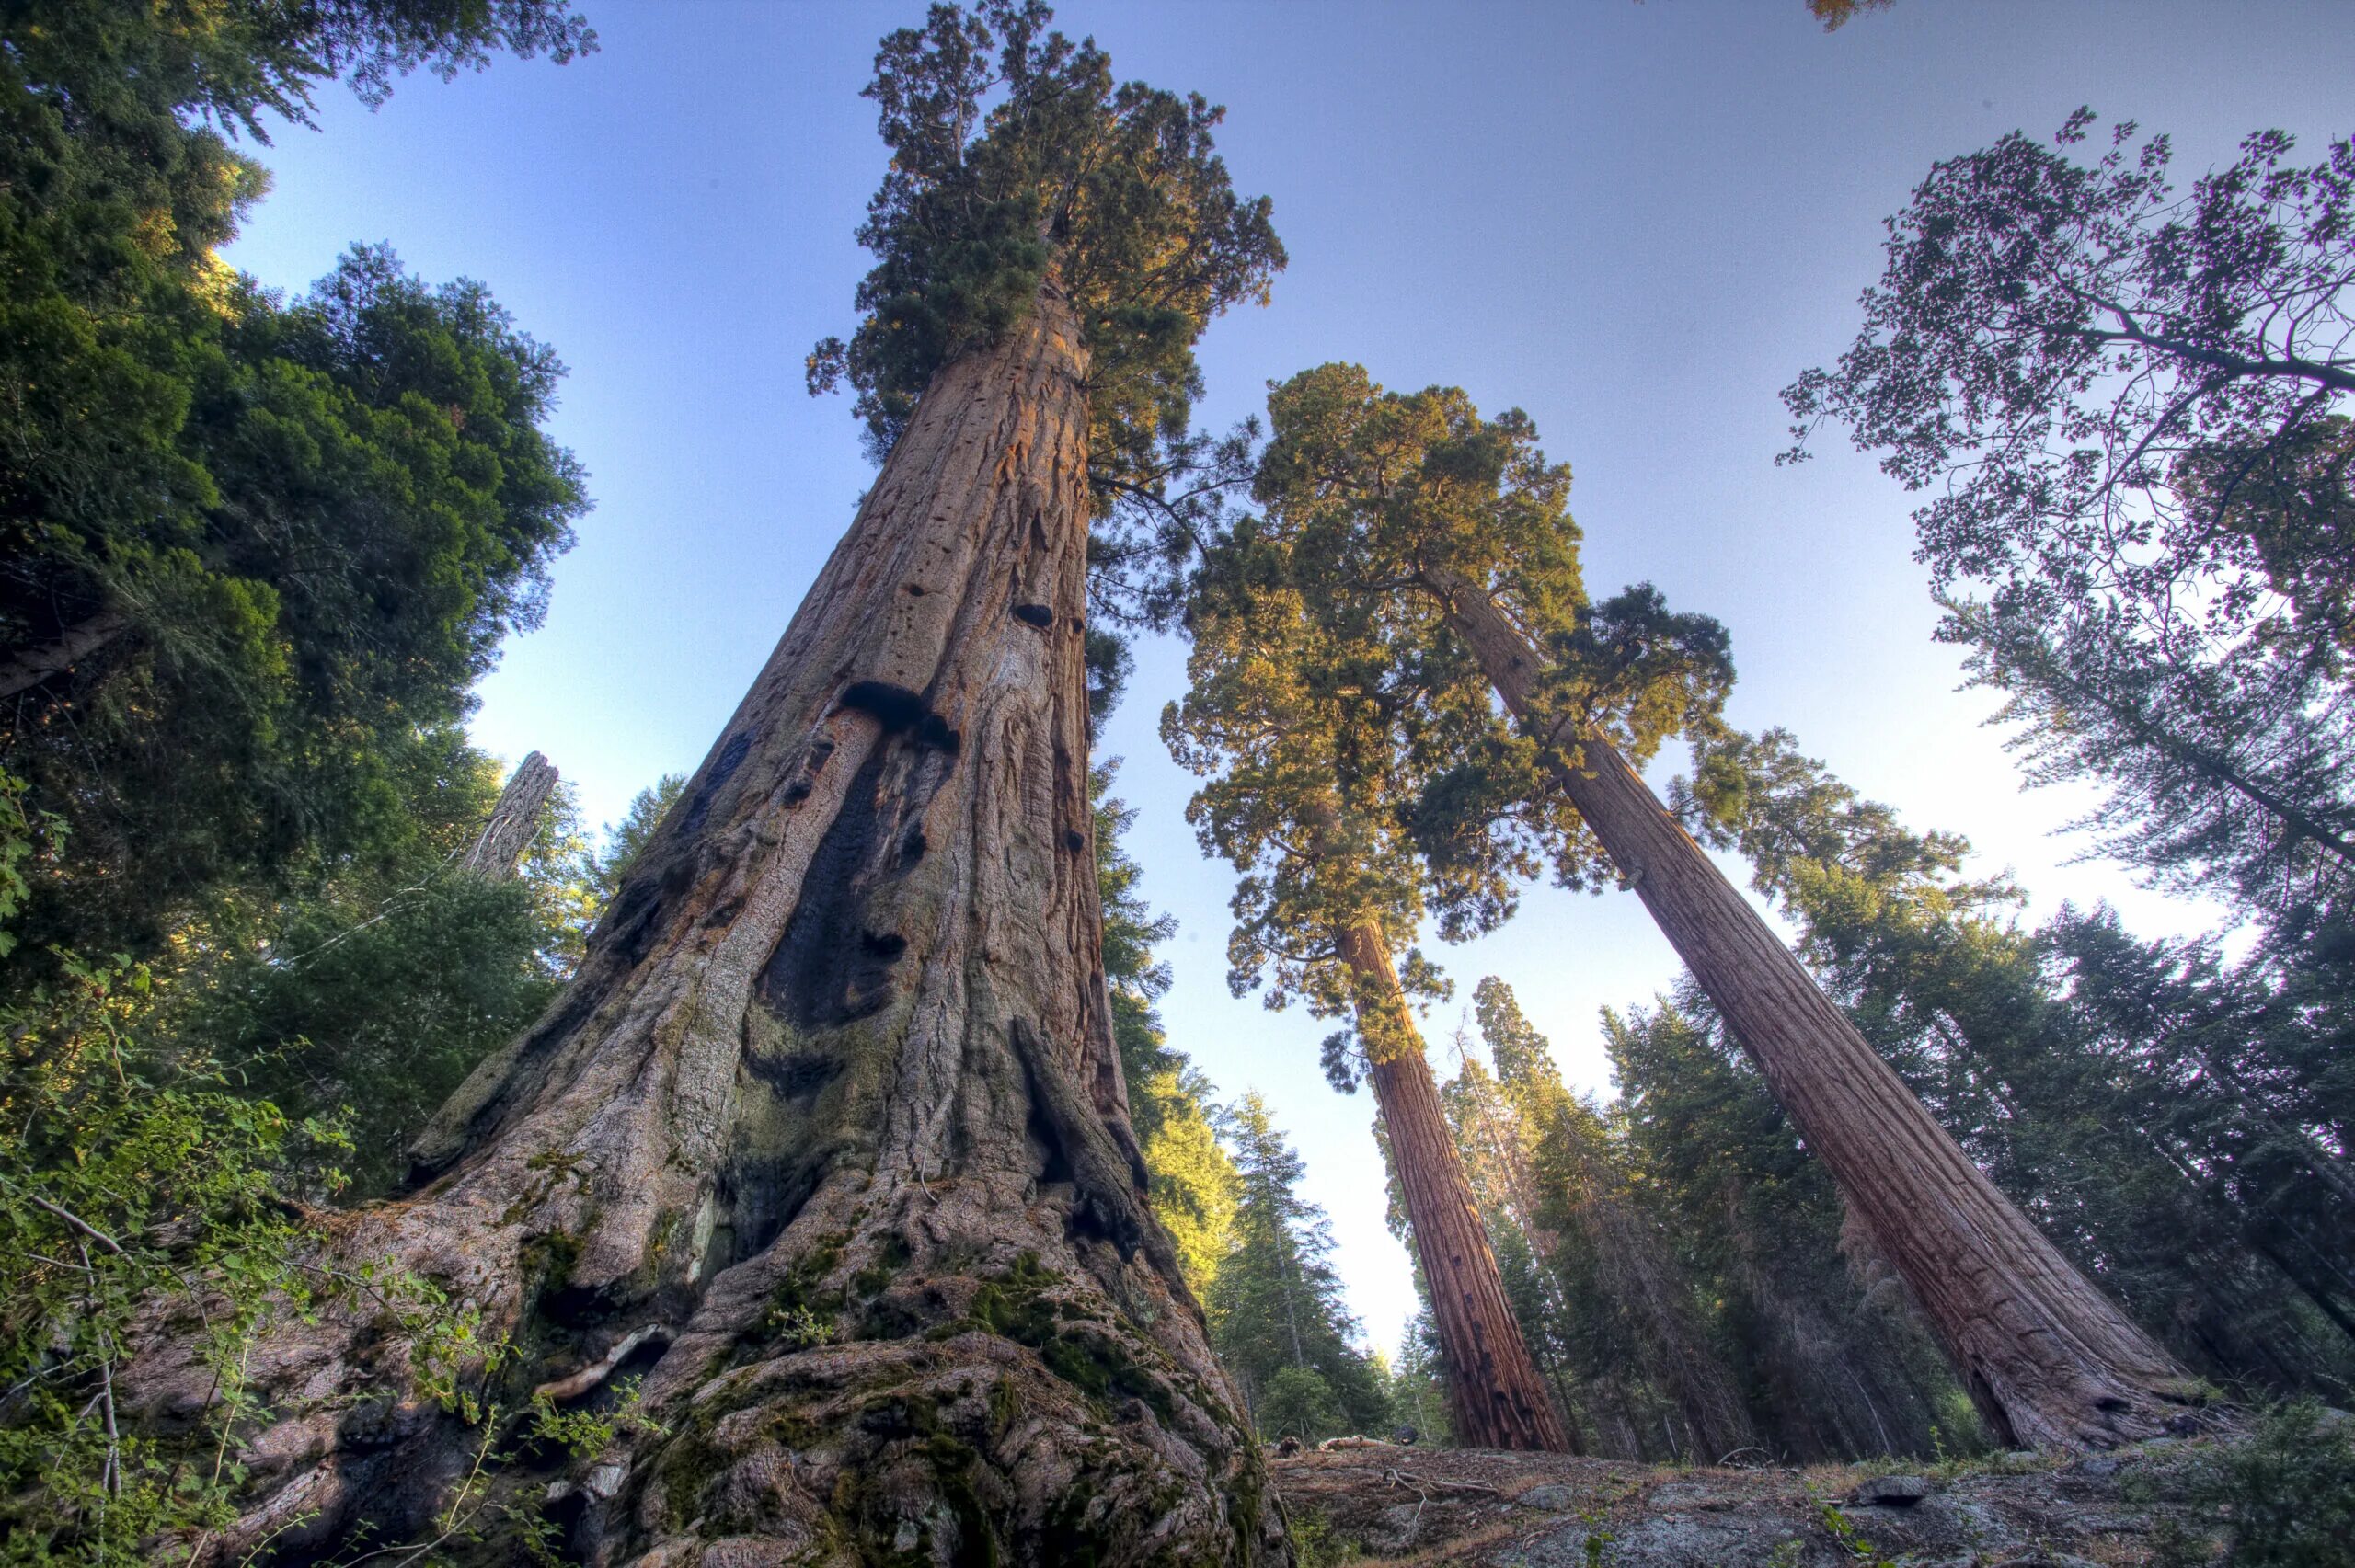 Калифорнийская Секвойя Гиперион. Секвойя дерево. Секвойя дерево гигант. Секвойя вечнозеленая дерево.